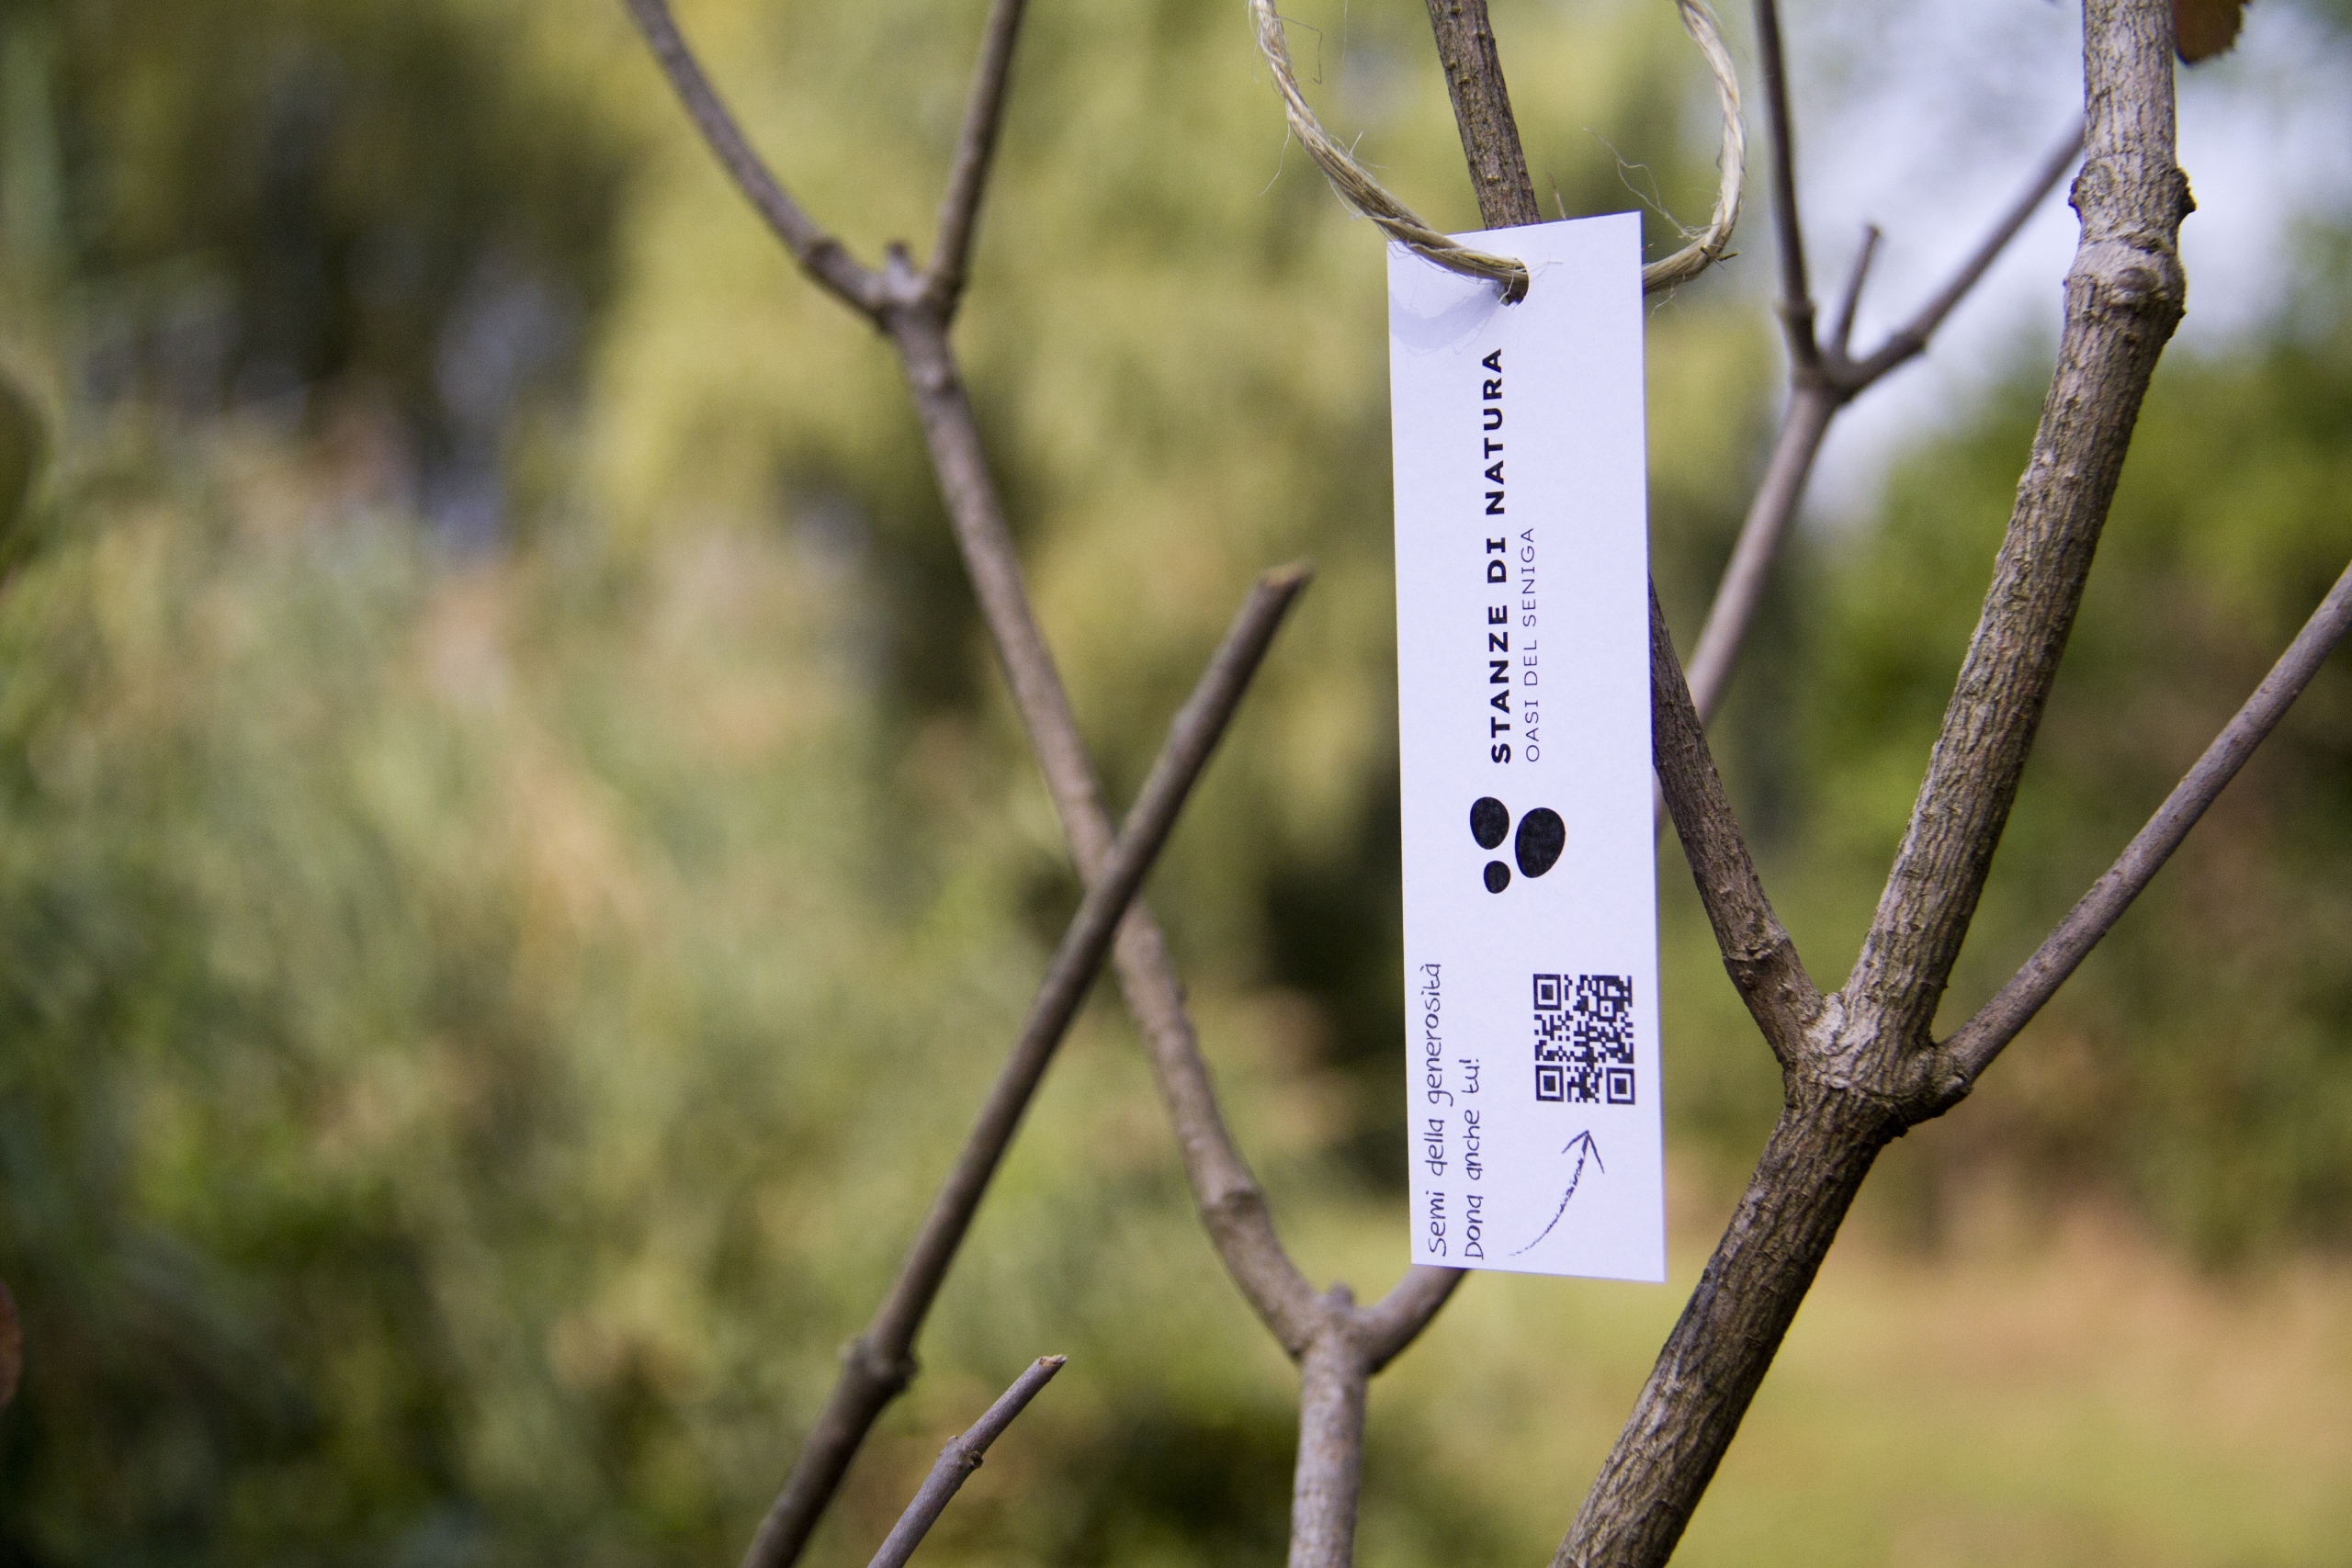 Etichetta sul ramo dell'albero